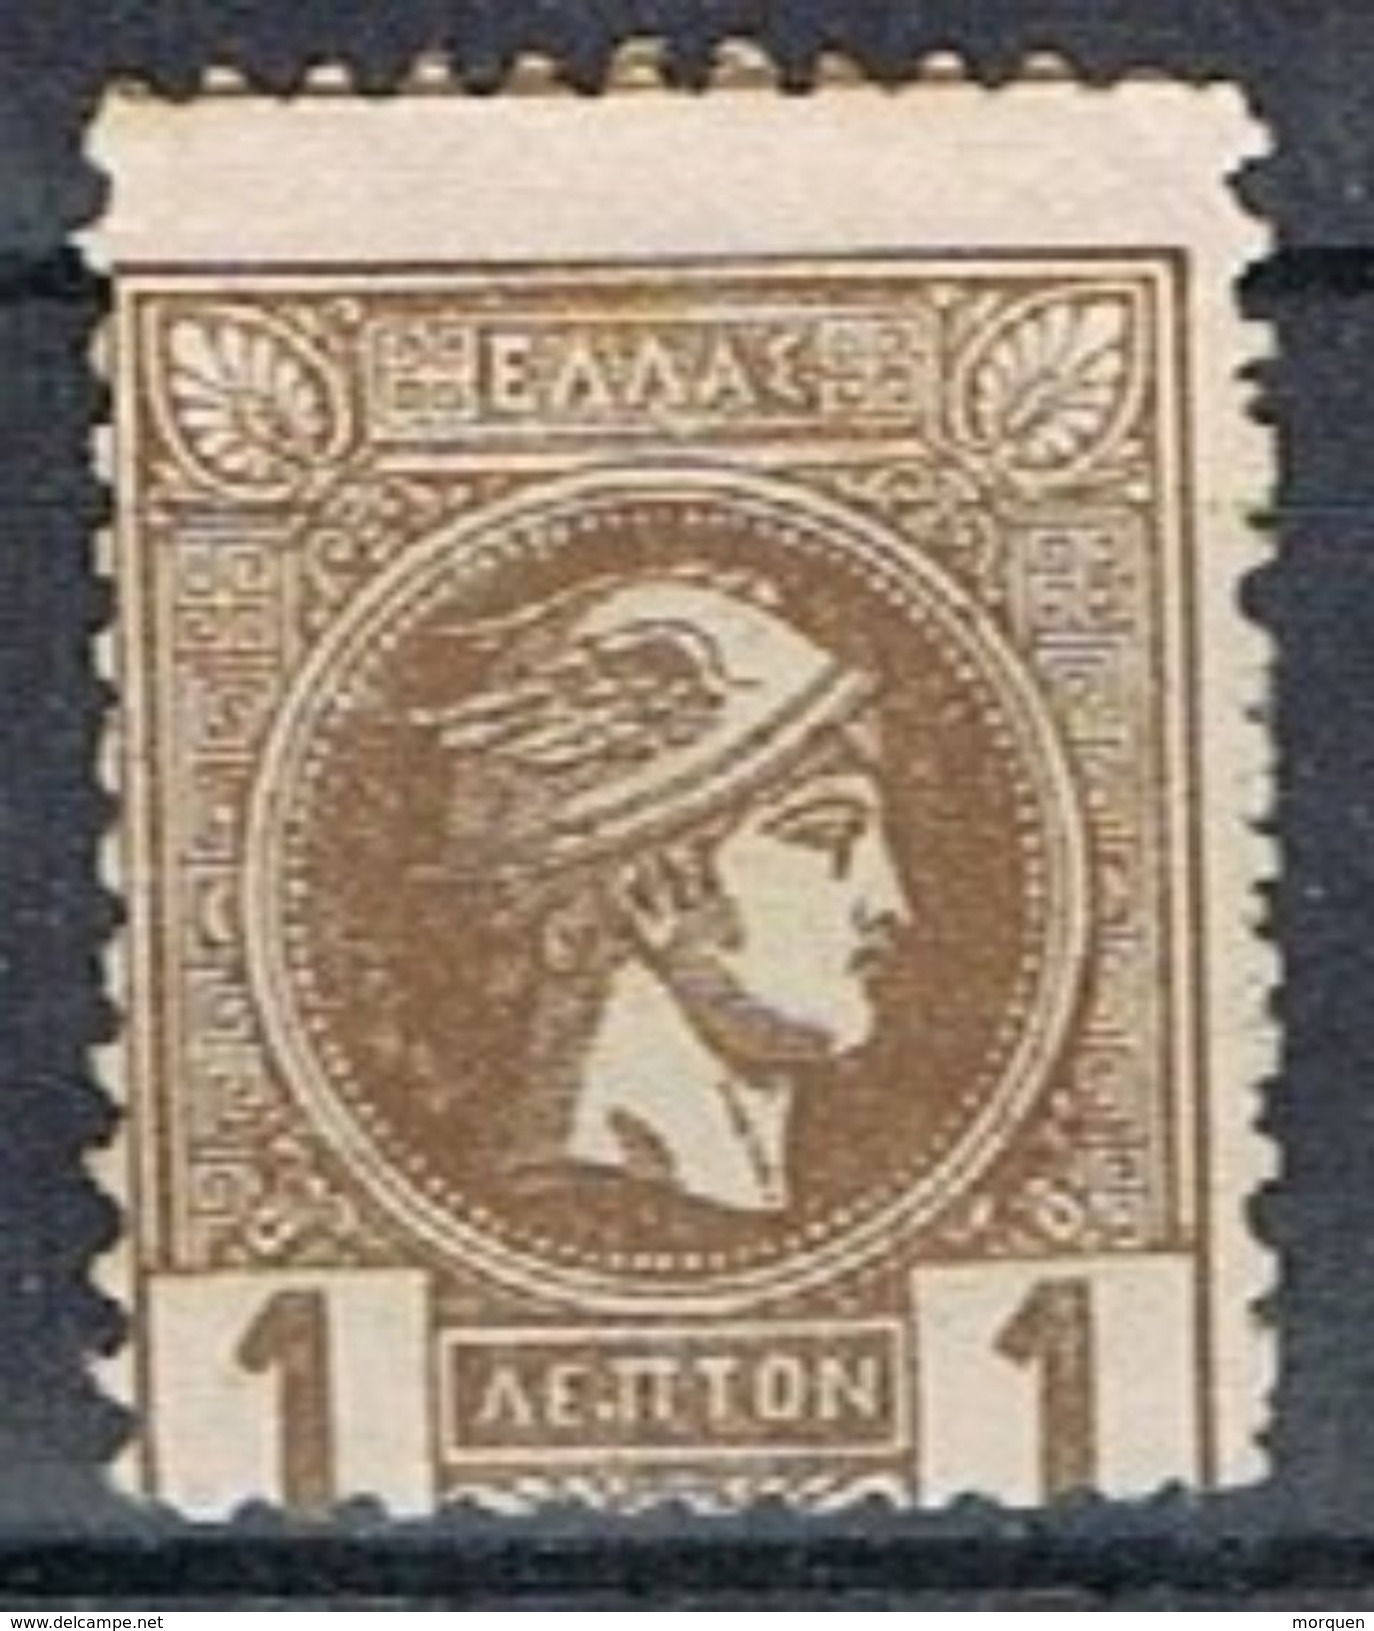 Sello GRECIA, Hermes, Impresion Local 1889, Dentado 11 1/2   Yvert Num 91a * - Neufs